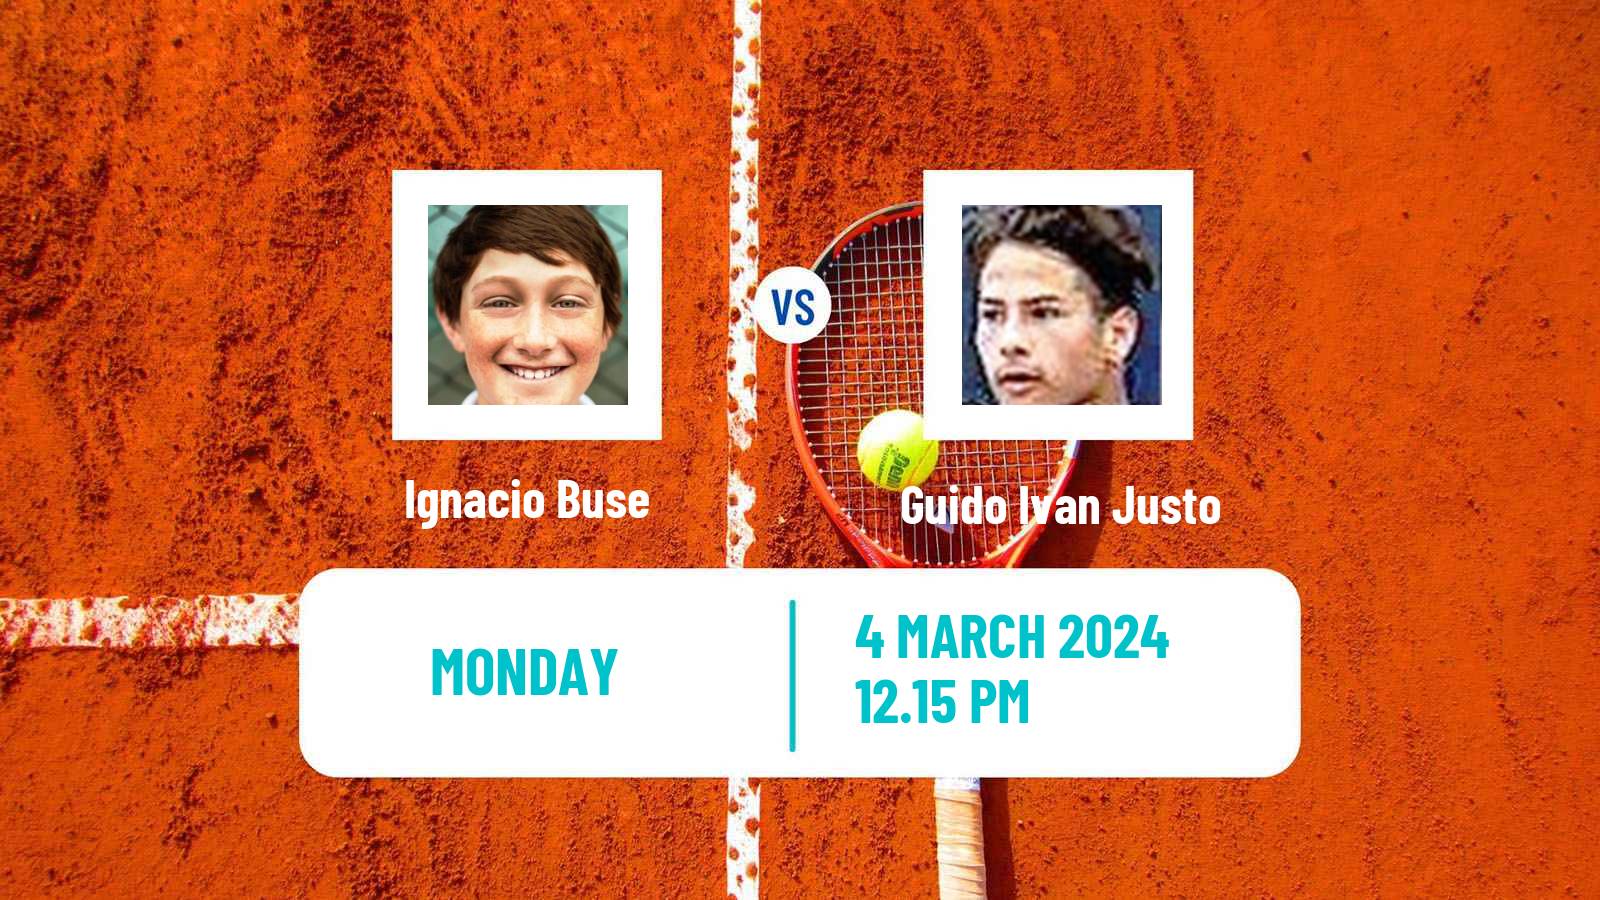 Tennis Santa Cruz Challenger Men Ignacio Buse - Guido Ivan Justo